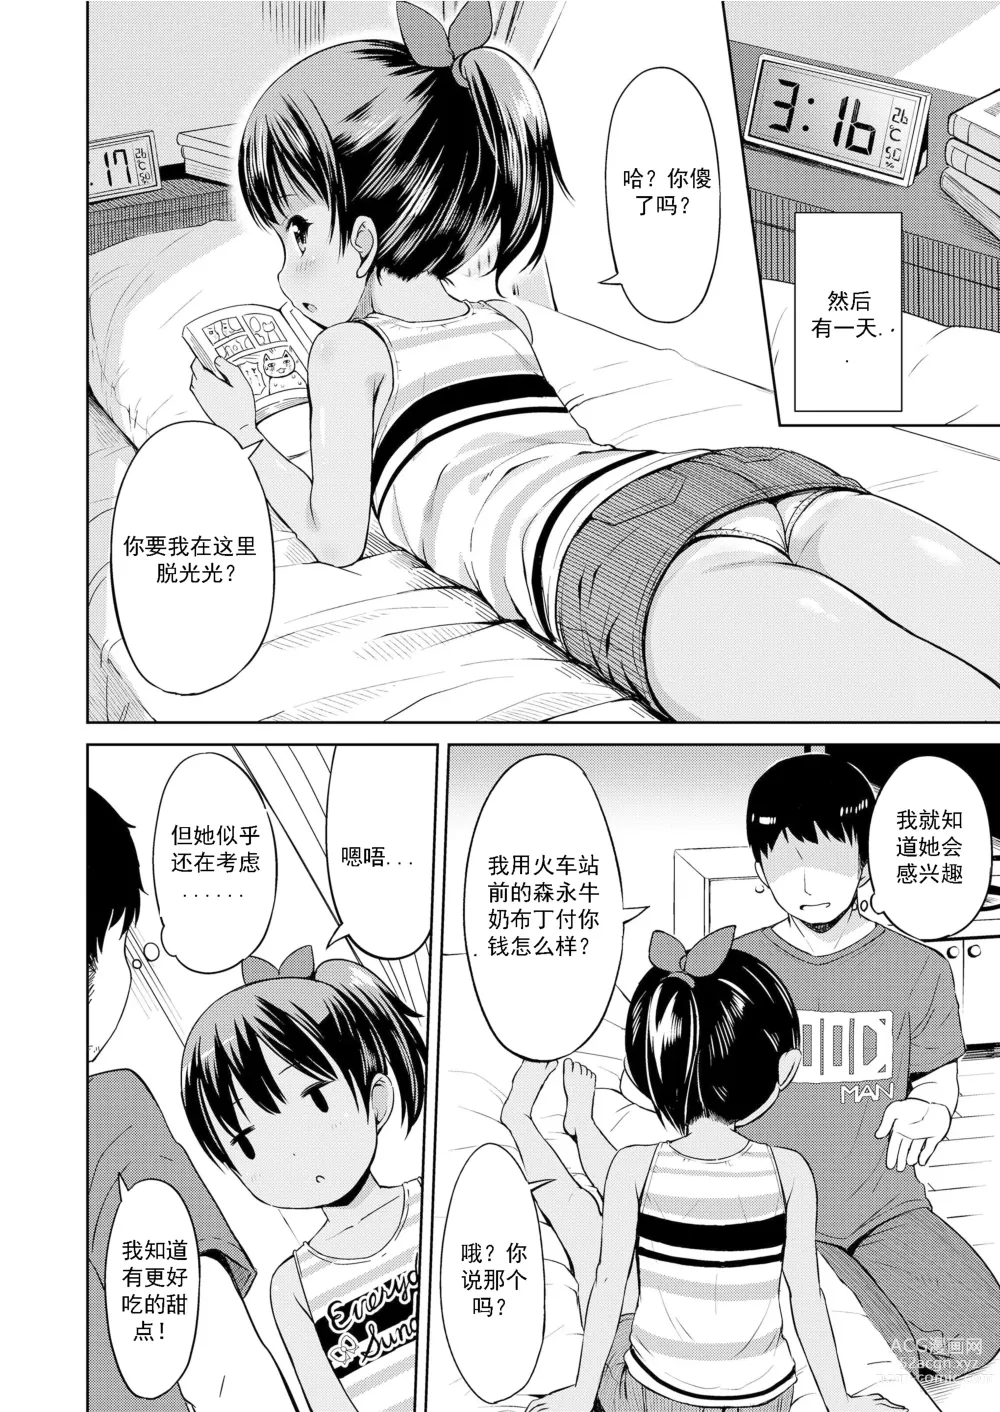 Page 9 of manga Nigirare. Zenpen